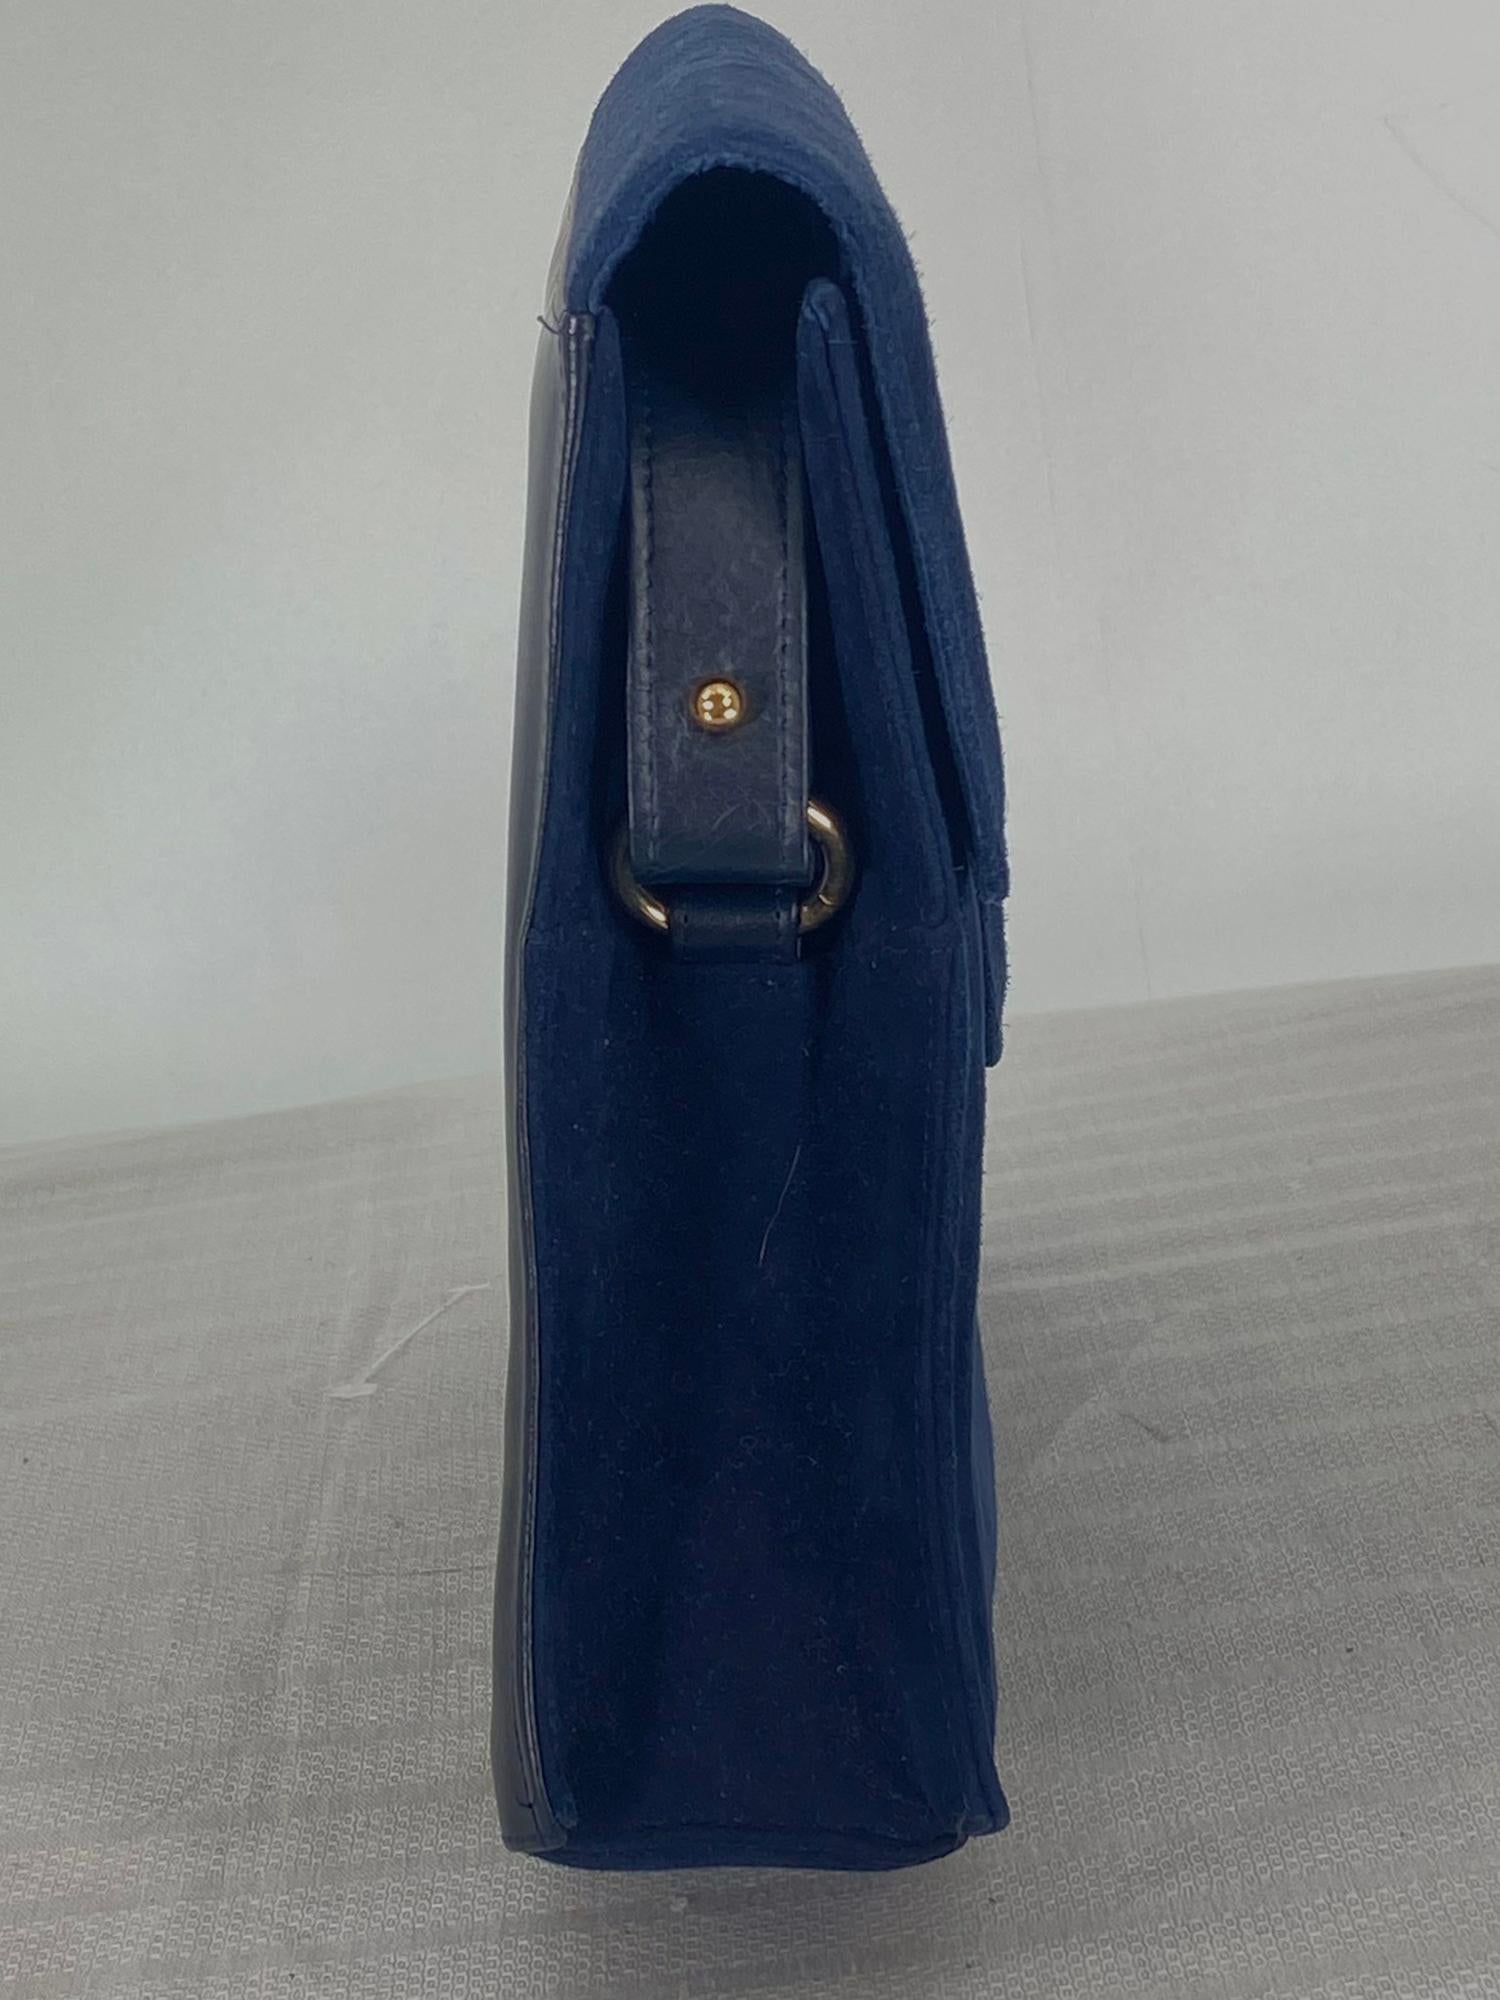 Sac à bandoulière en cuir et daim bleu marine Charles Jourdan, des années 1990. Sac structuré avec un rabat en forme sur le devant, doté d'une barre en métal doré et d'une fermeture magnétique cachée. Le devant et les côtés du sac sont en daim bleu